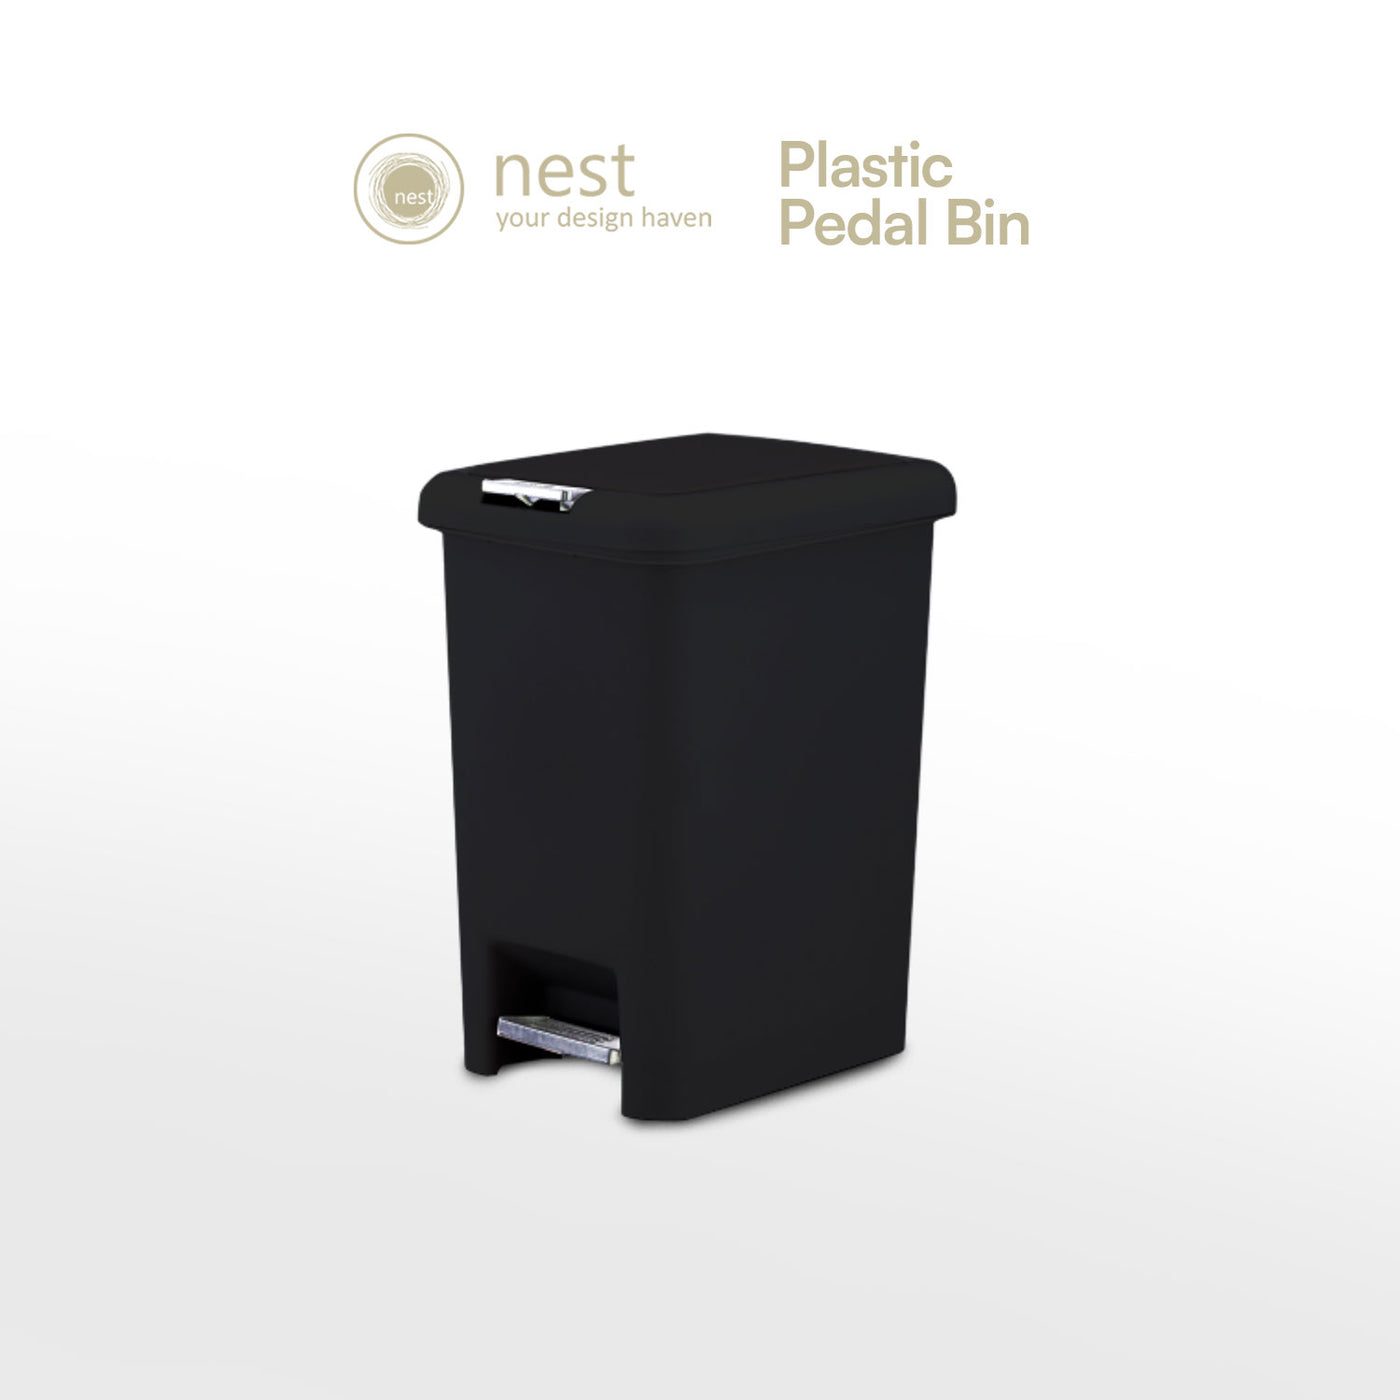 NEST DESIGN LAB Premium Pedal Bin Plastic